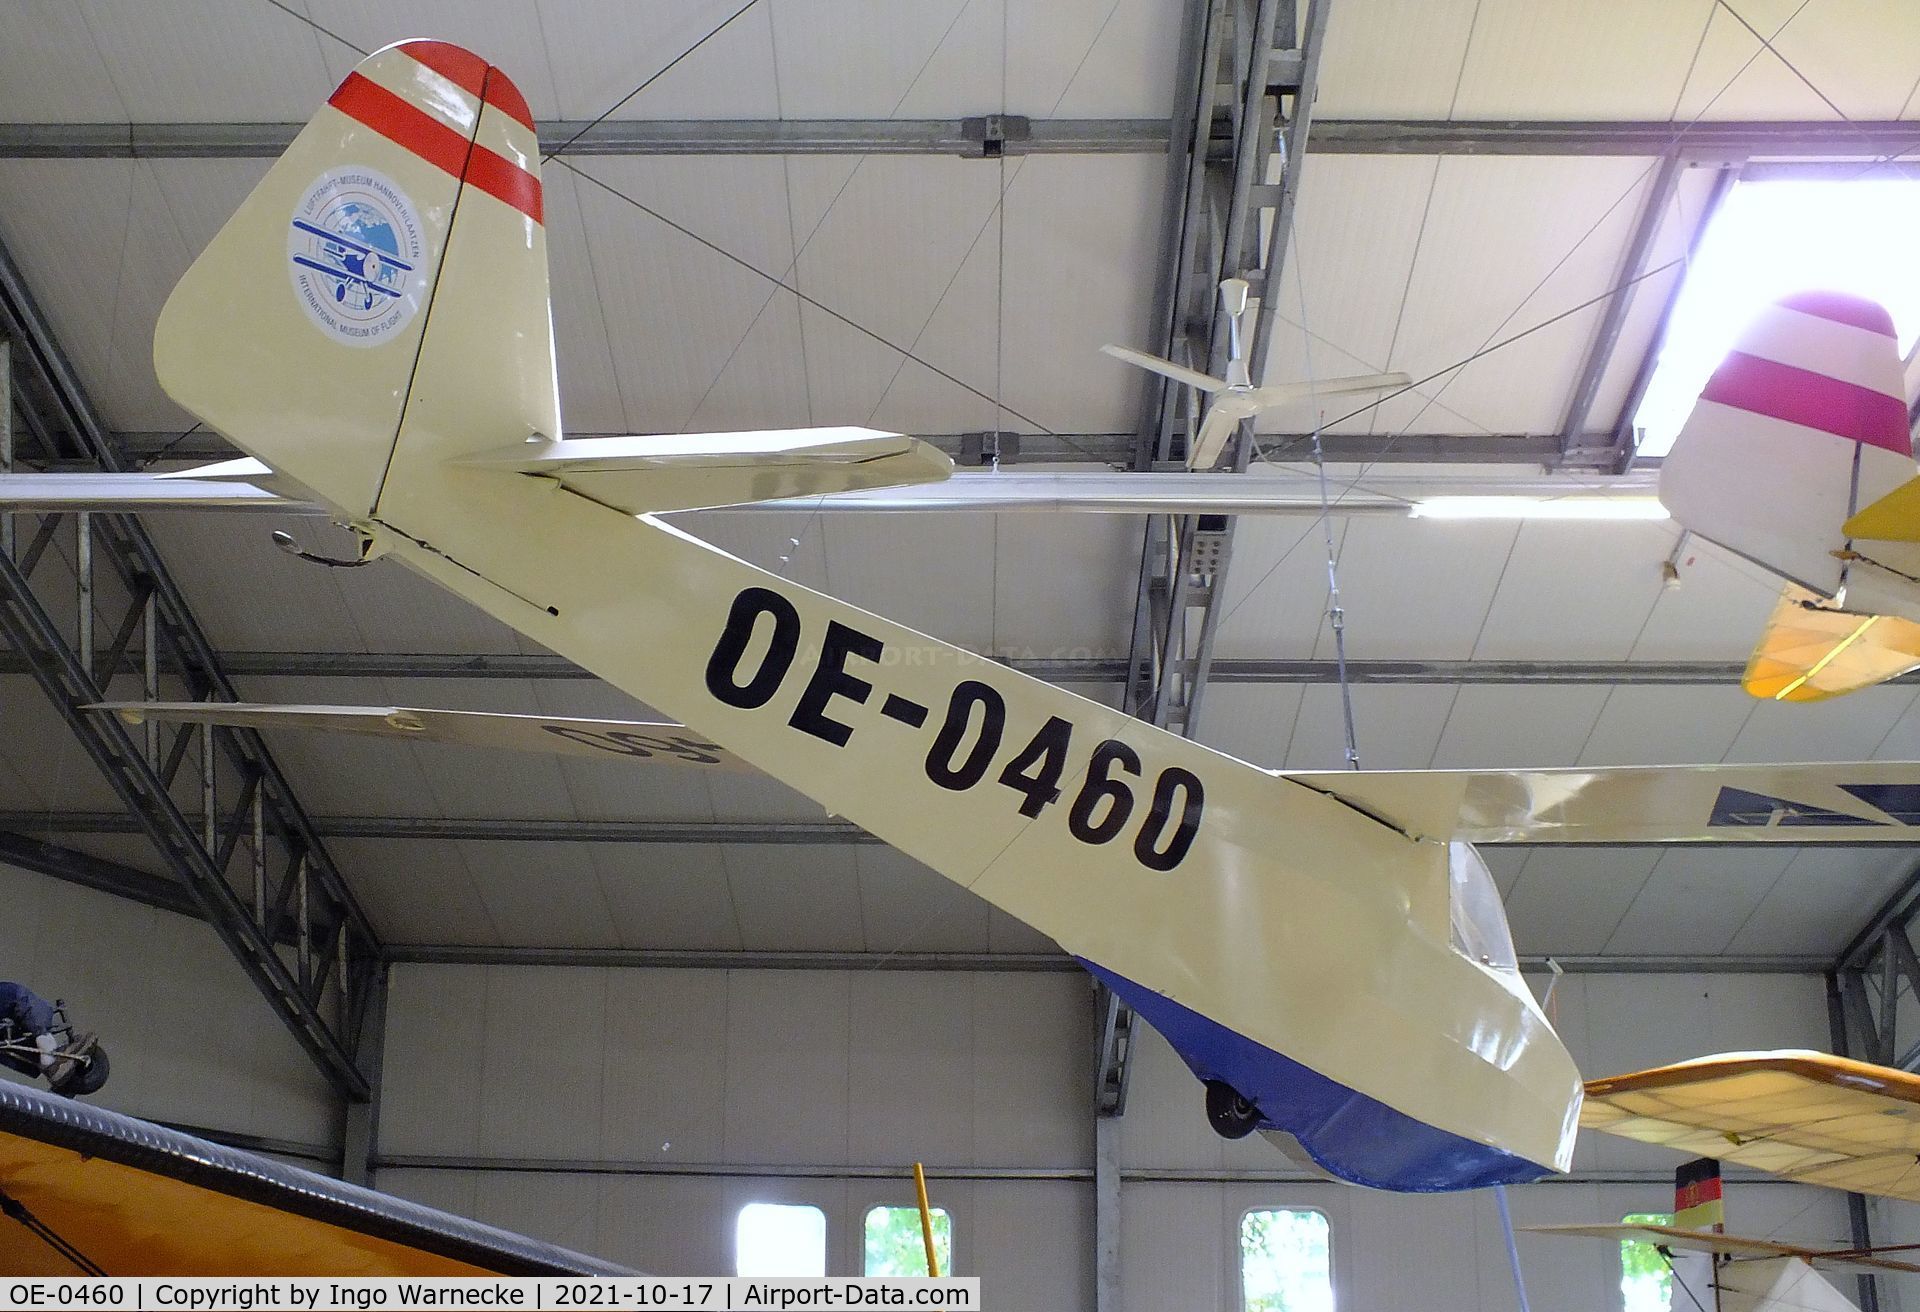 OE-0460, Scheibe L-Spatz 55 C/N R219/H234, Scheibe L-Spatz 55 at the Luftfahrtmuseum Laatzen, Laatzen (Hannover)